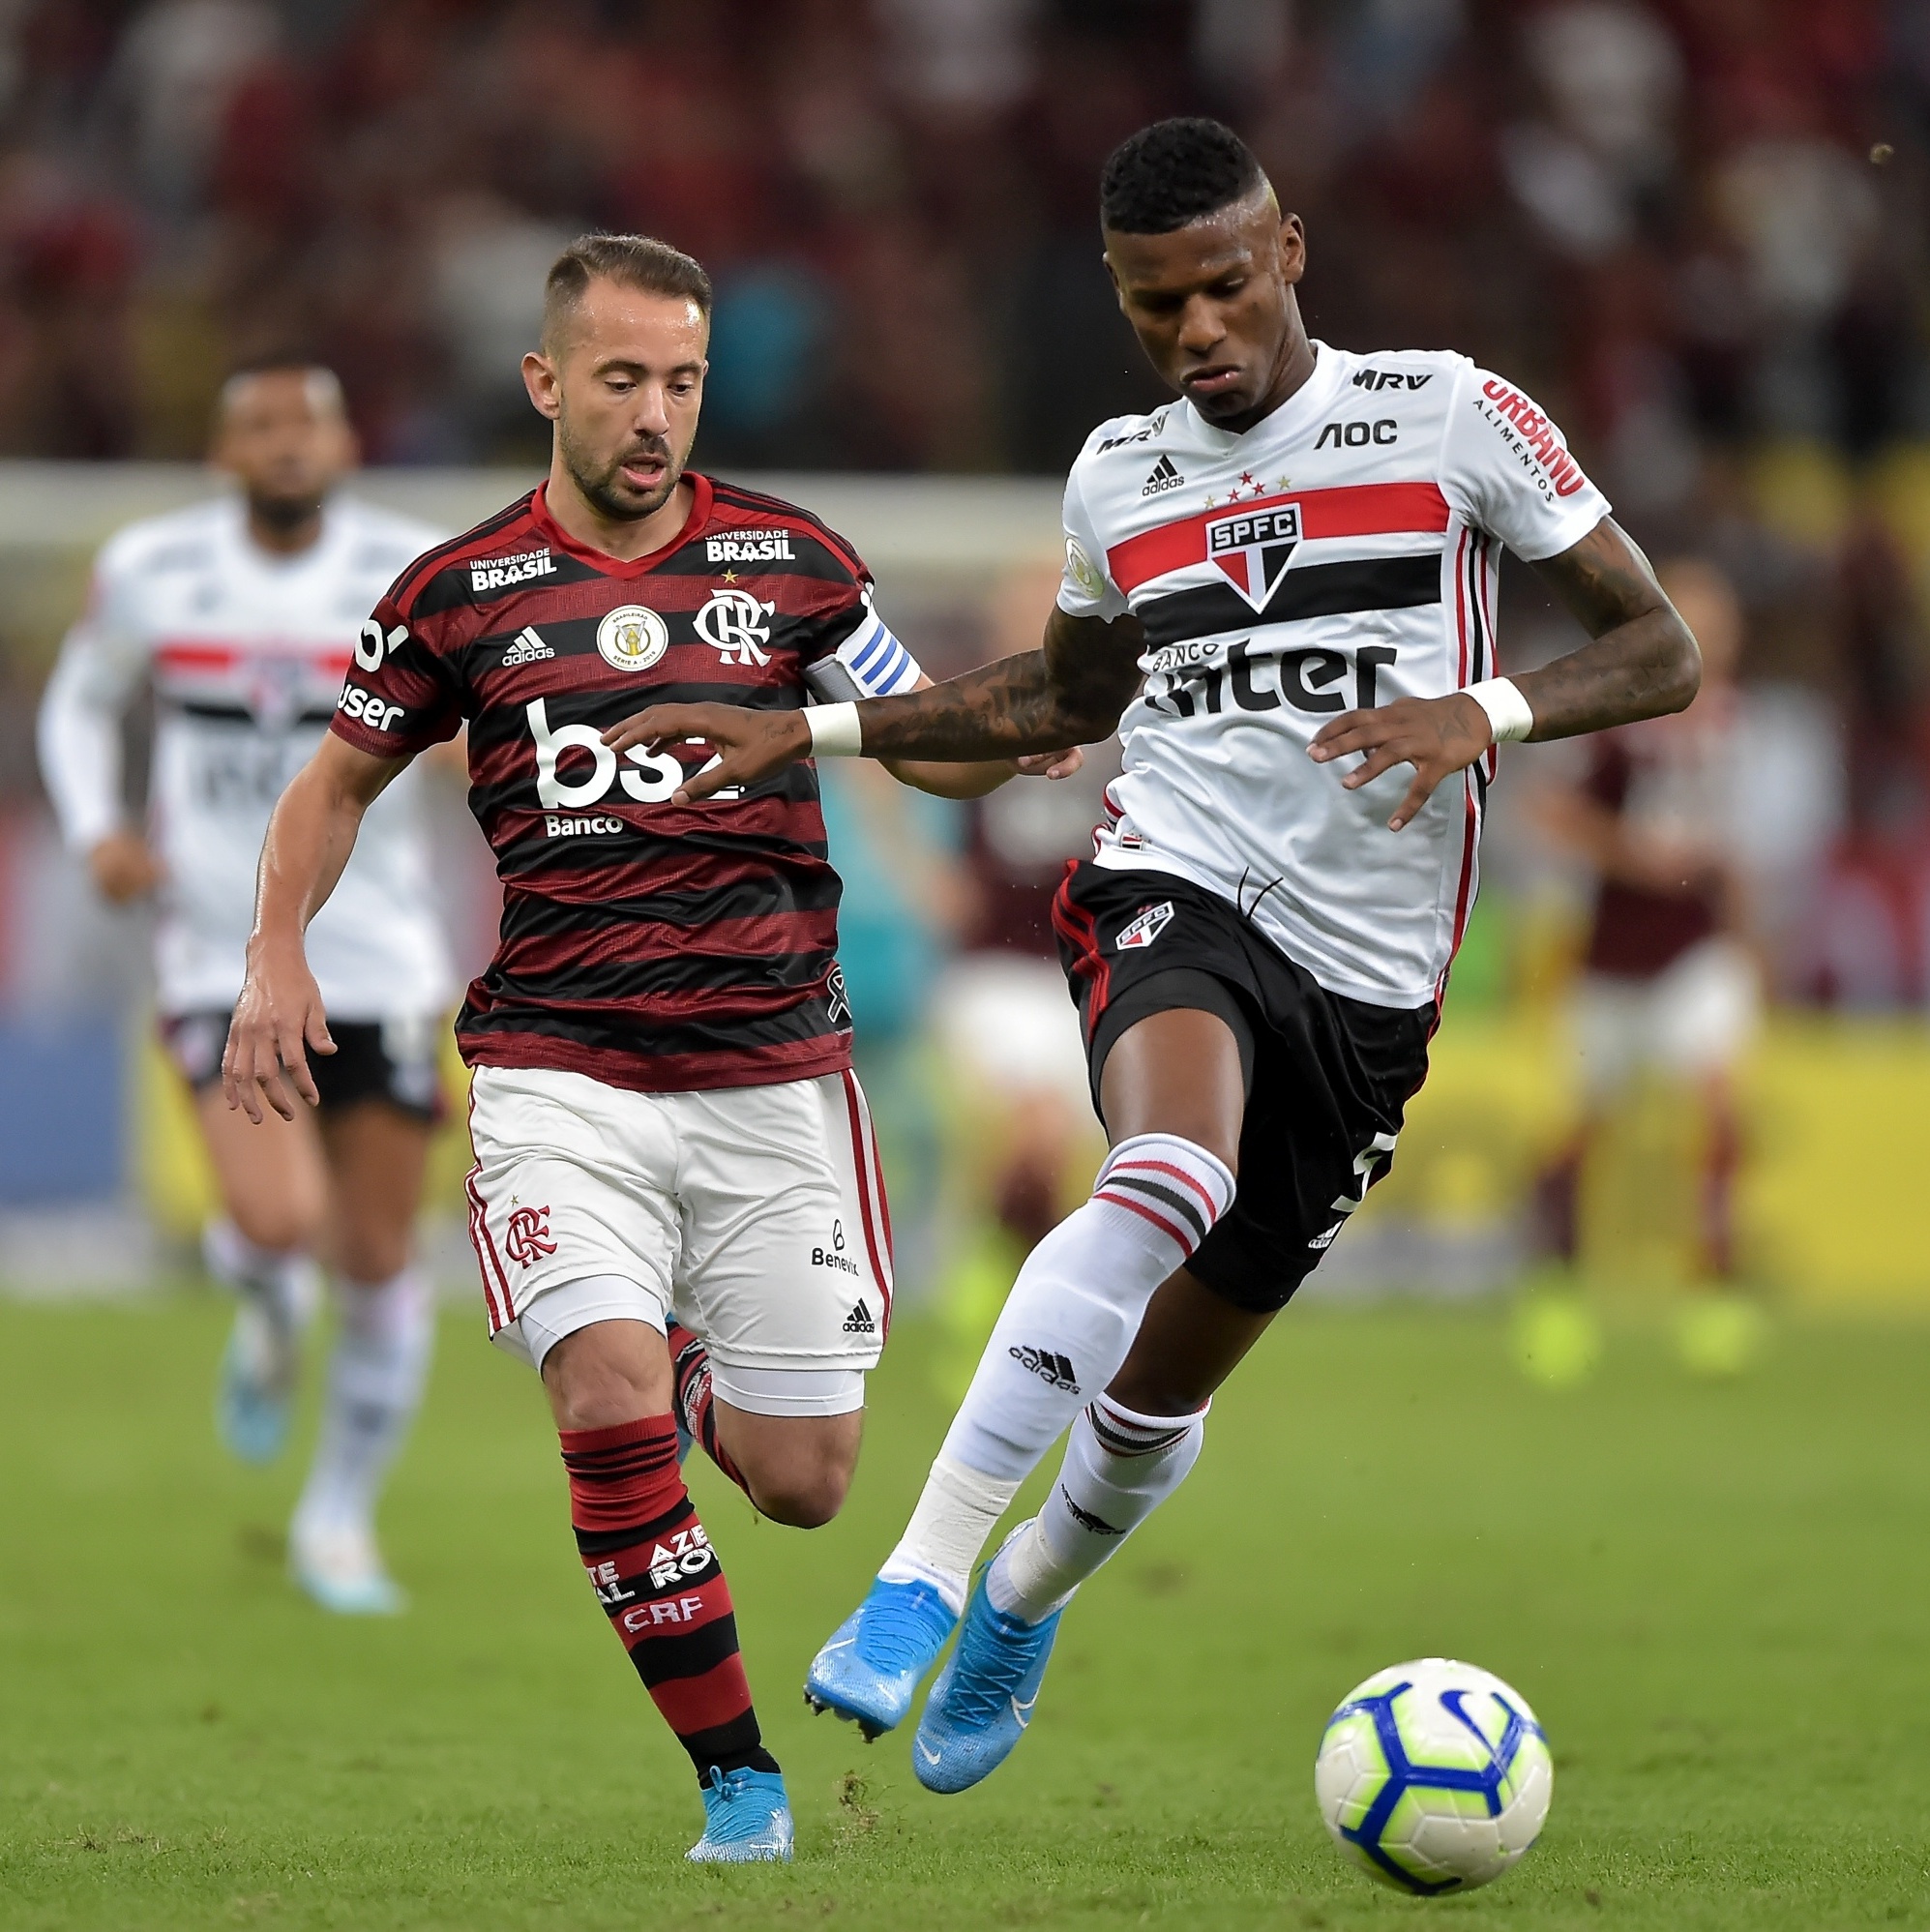 Flamengo x Palmeiras: onde assistir, horário e prováveis escalações do jogo  pelo Brasileirão - Lance!